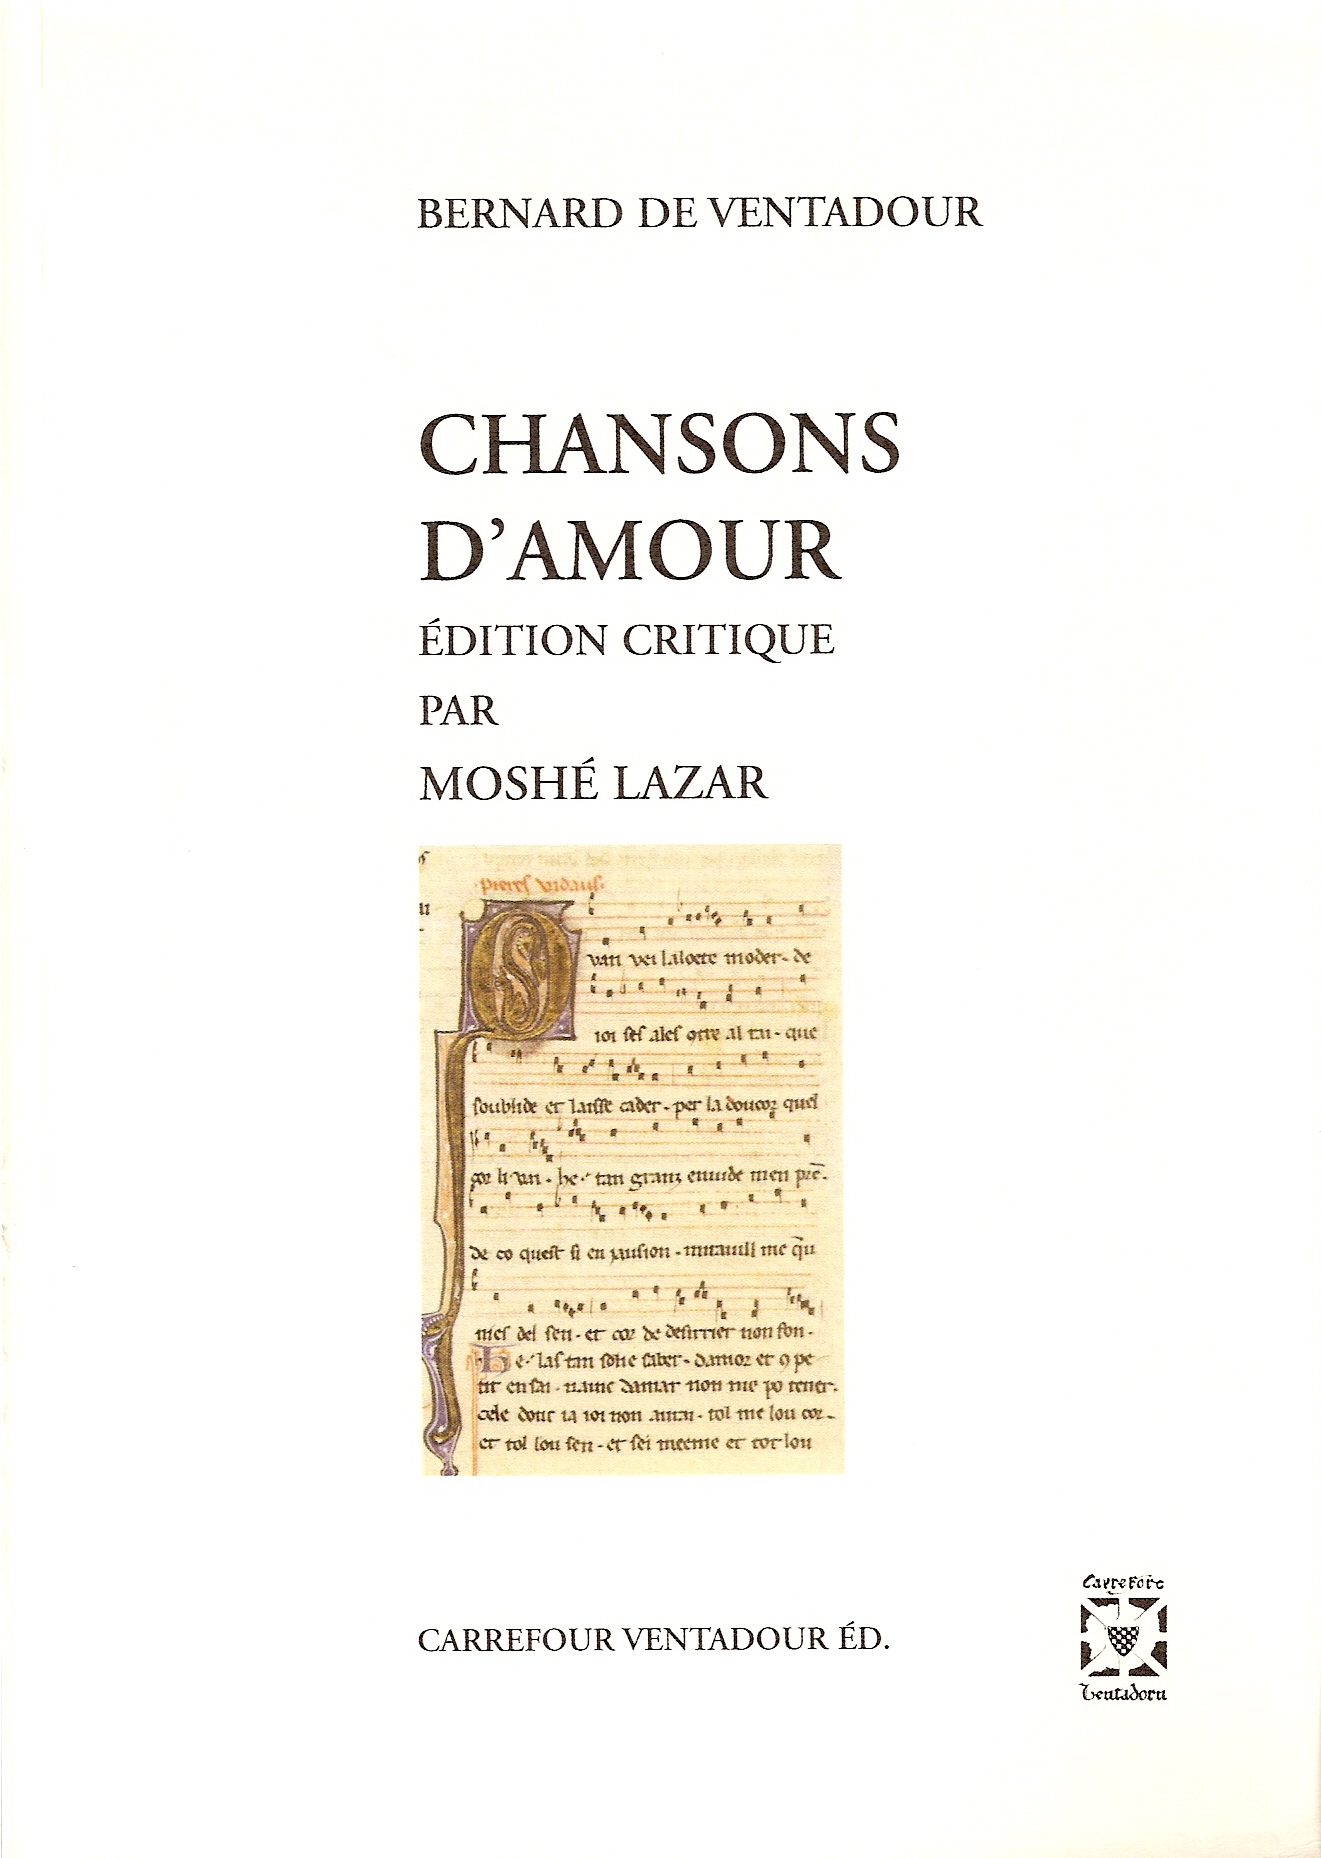 Chansons d’amour de Bernart de Ventadorn, Moshé Lazar